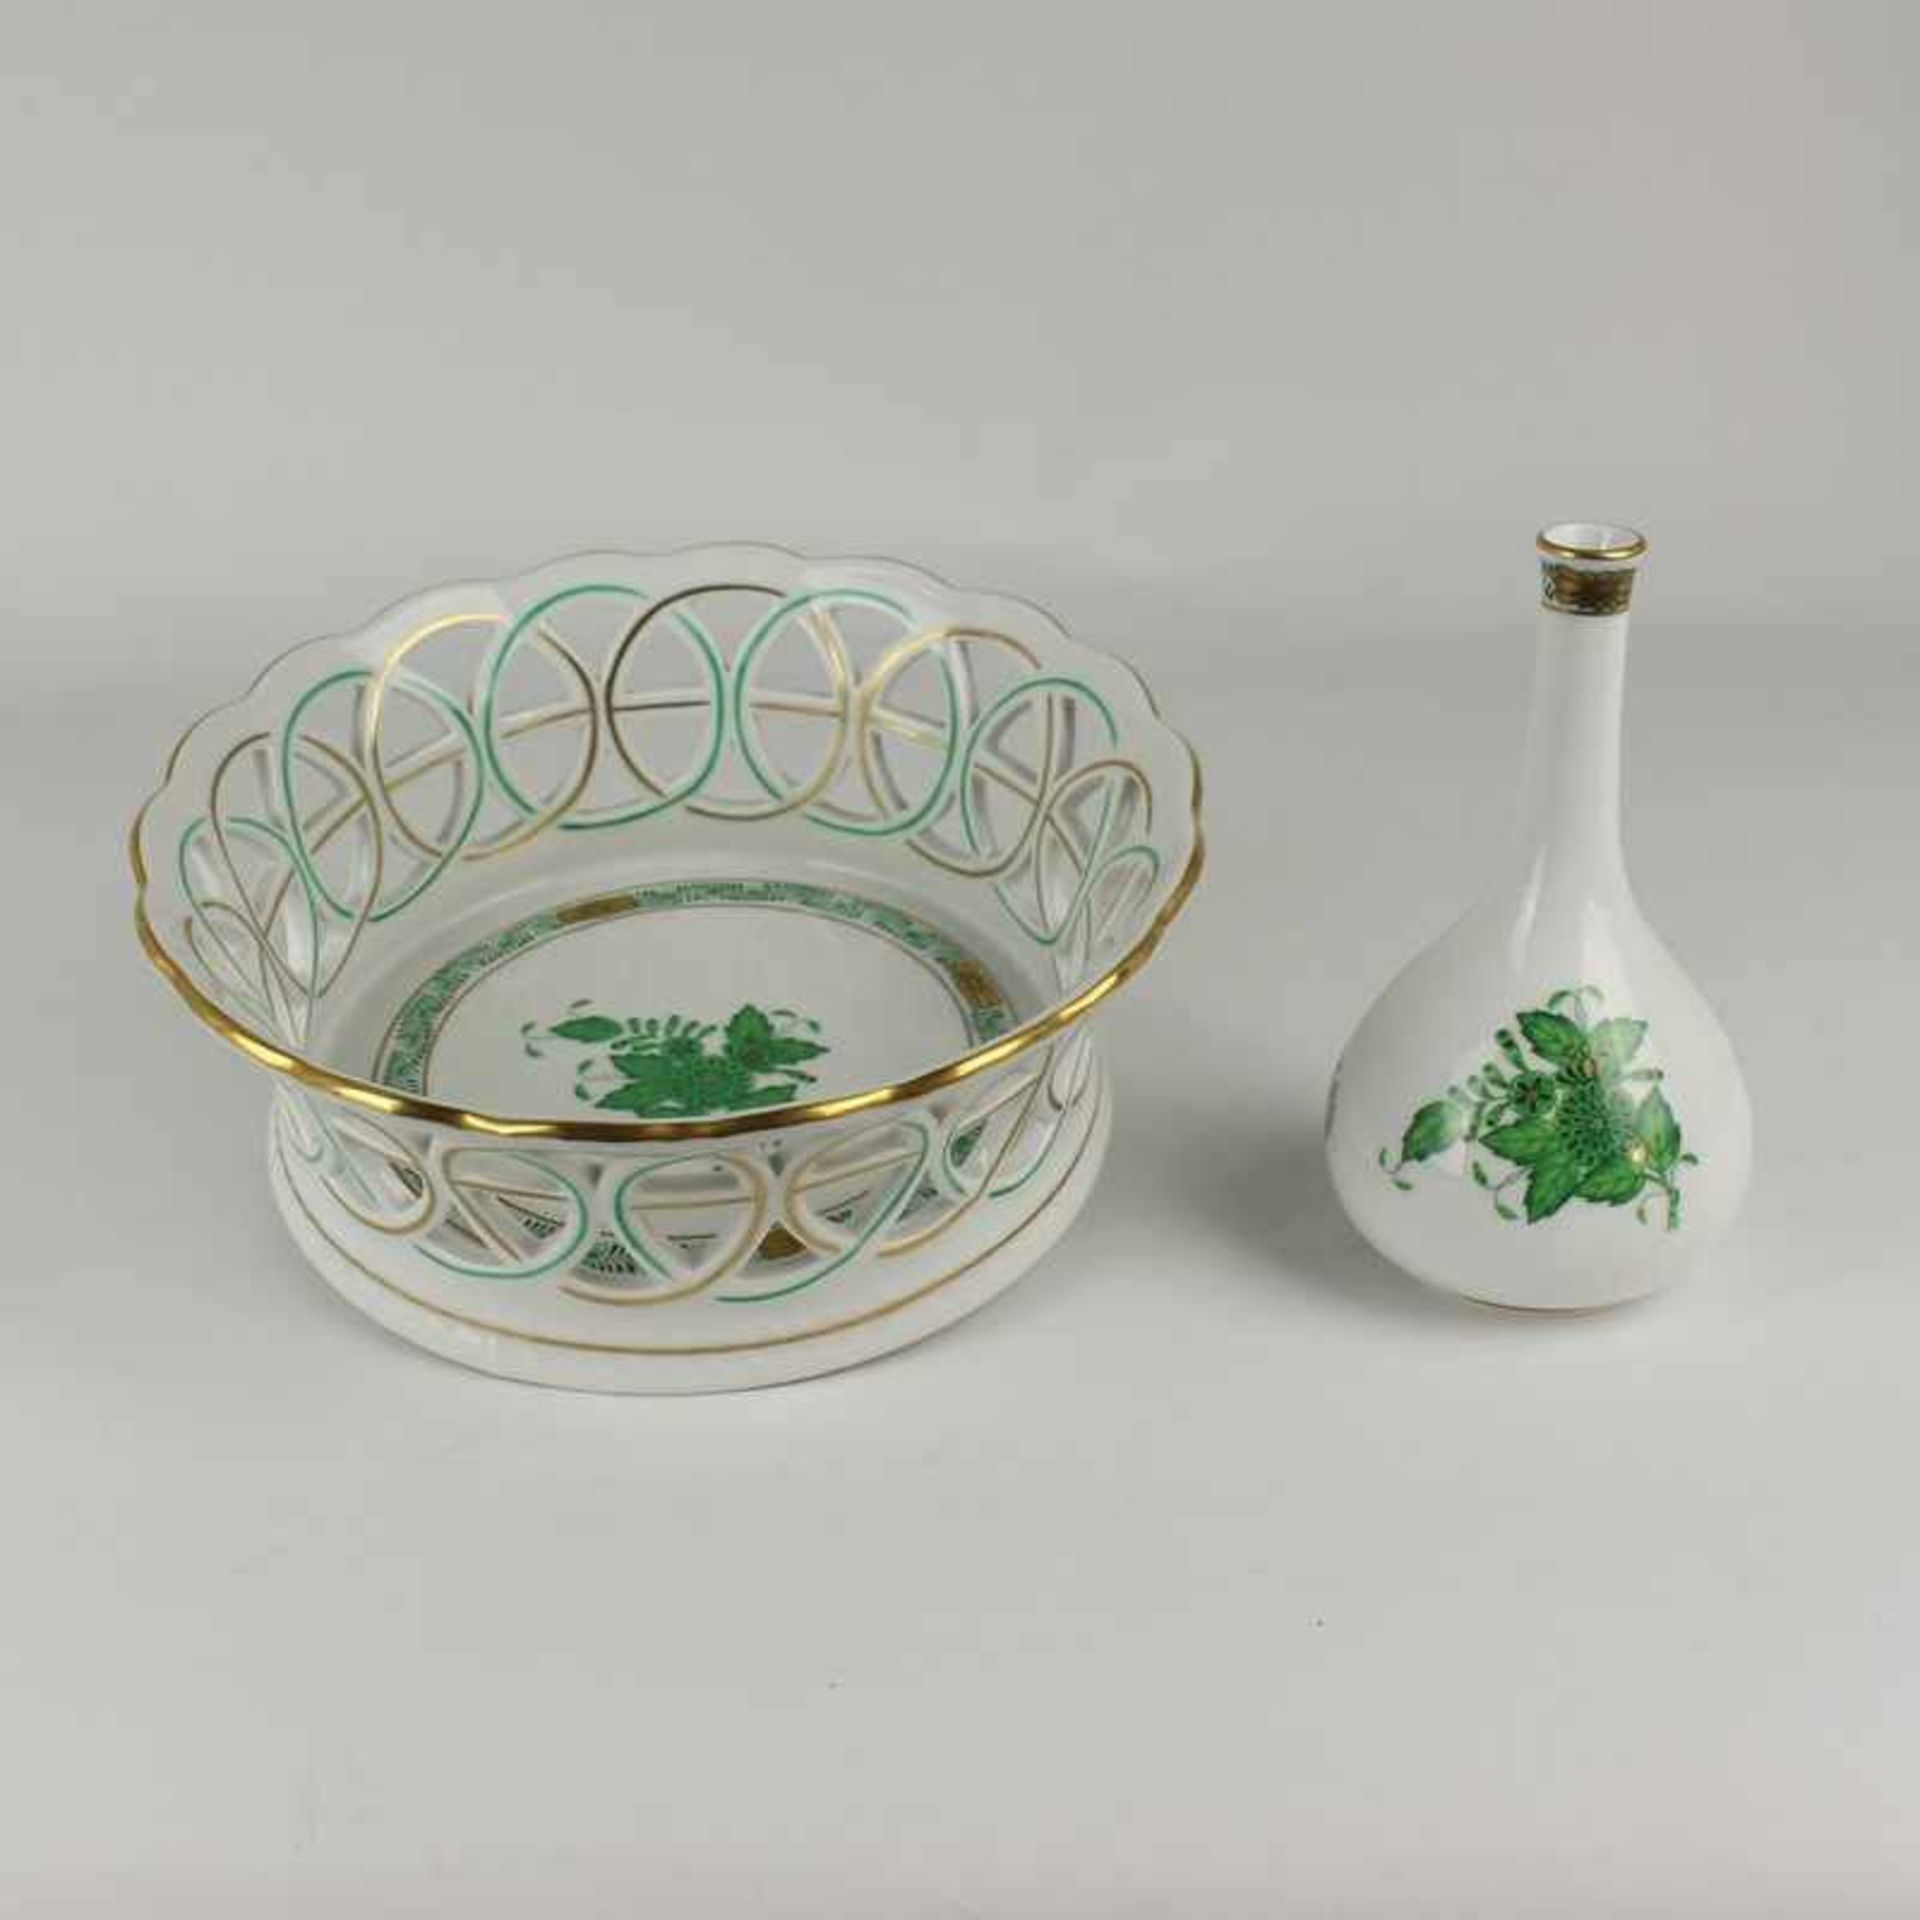 Herend - Zwei Teile grüne/blaue Stempelmarke, Dekor "Apponyi grün", kl. Vase, bauchiger Korpus m.